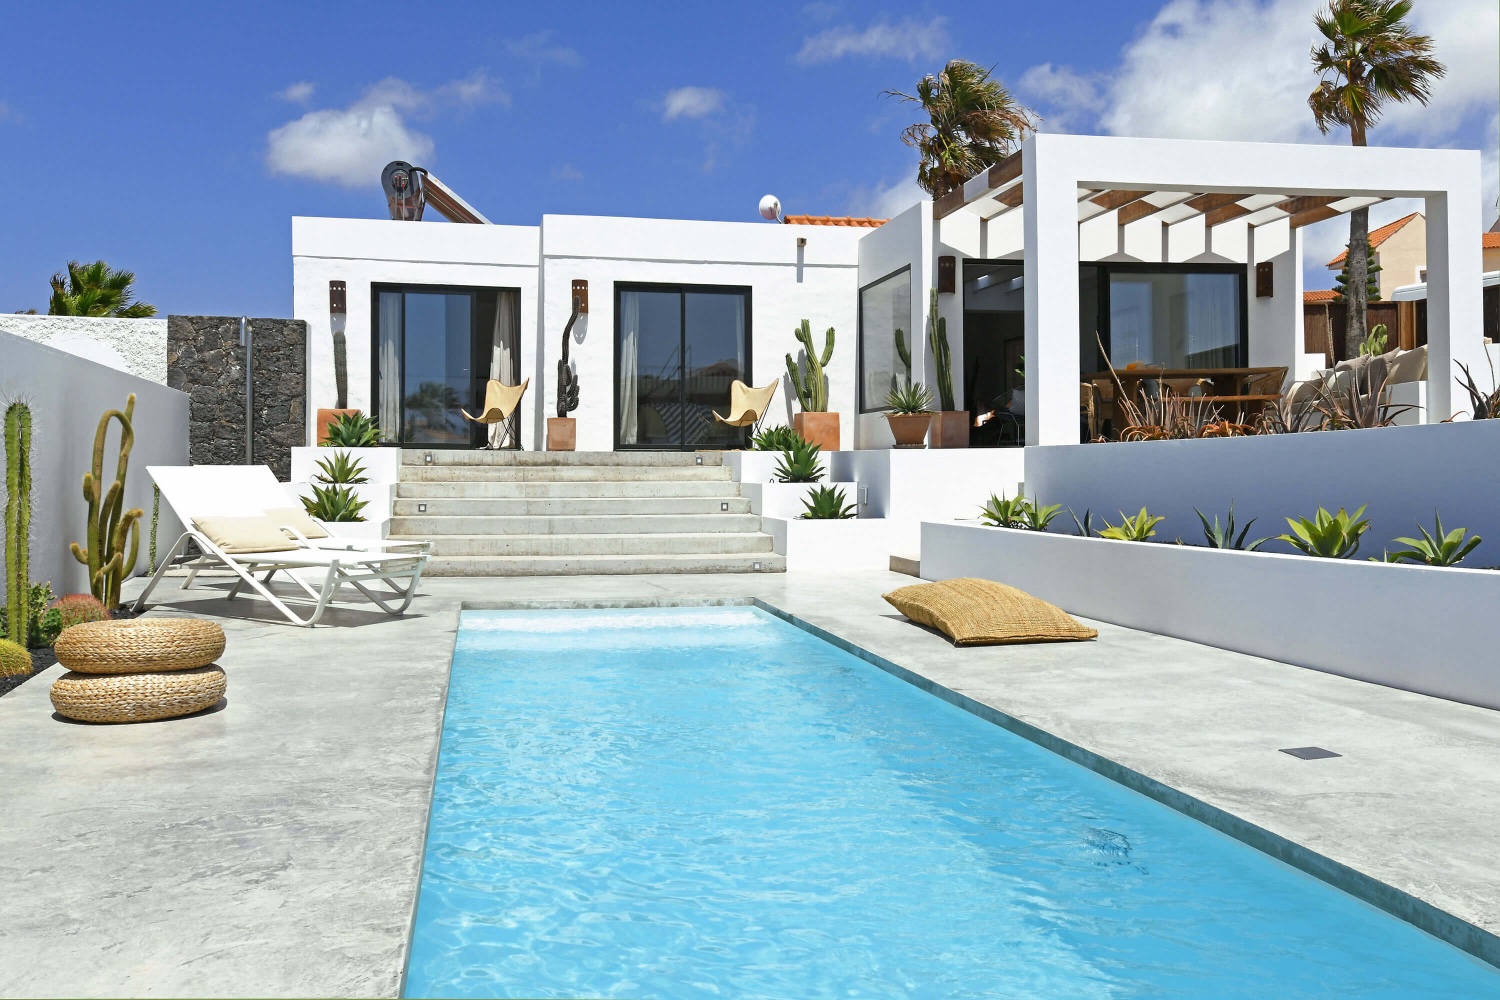 Cet hébergement exceptionnellement joli et moderne avec une grande piscine privée est meublé avec beaucoup de goût et parfaitement situé à quelques minutes à pied des belles plages de La Pared et Viejo Rey.